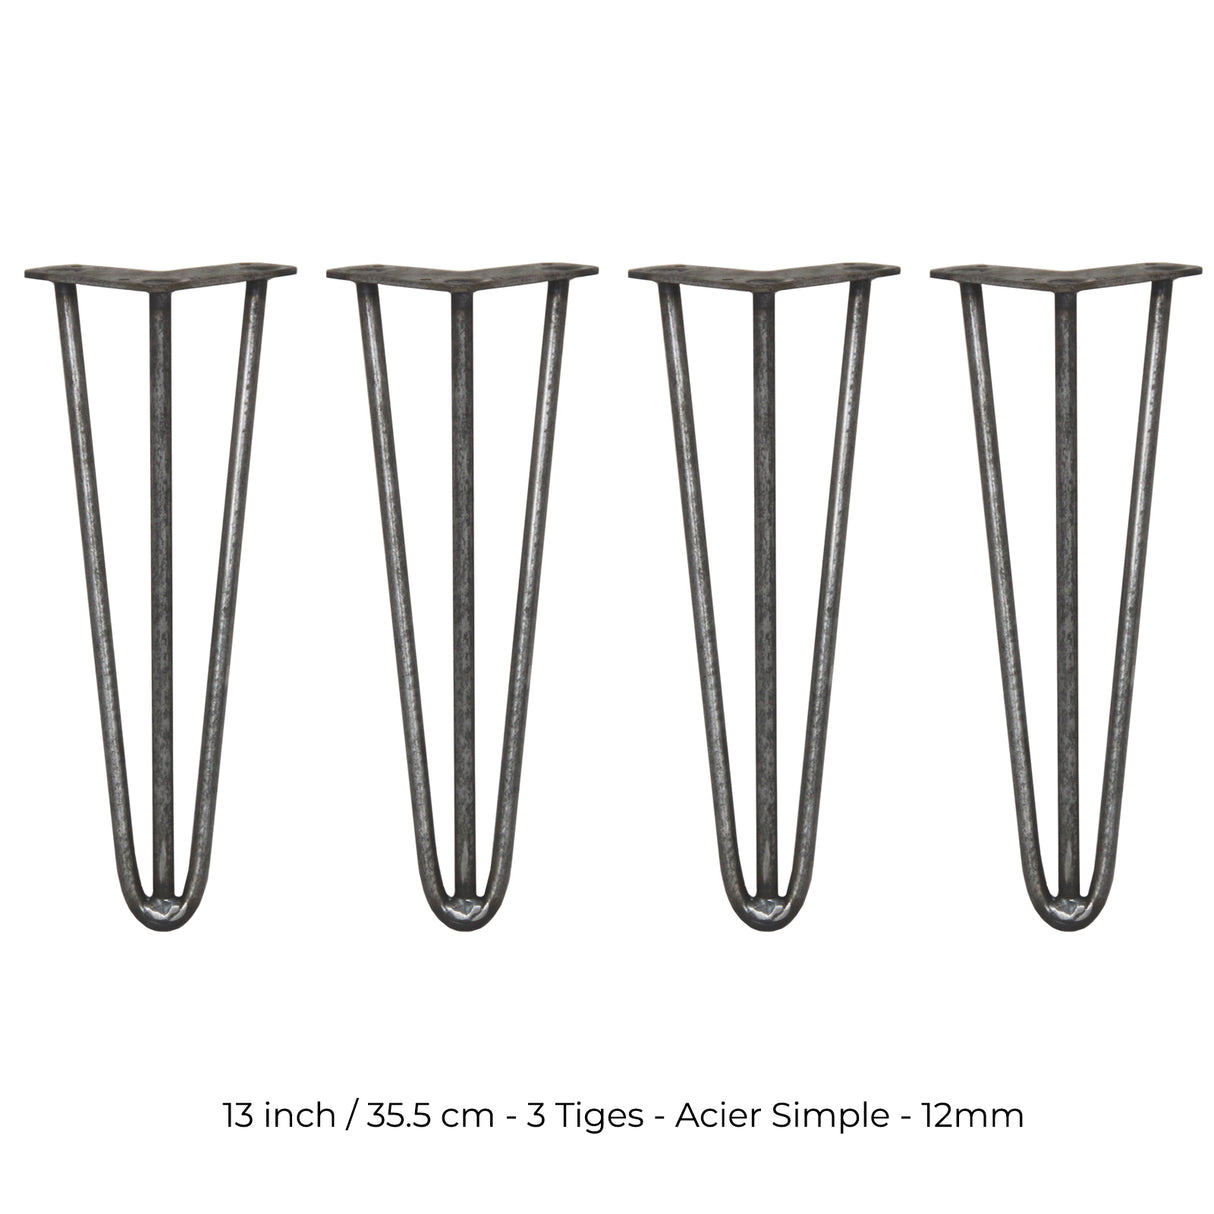 4 Pieds de Table en Epingle à Cheveux - 35,5cm - 3 Tiges - 12mm